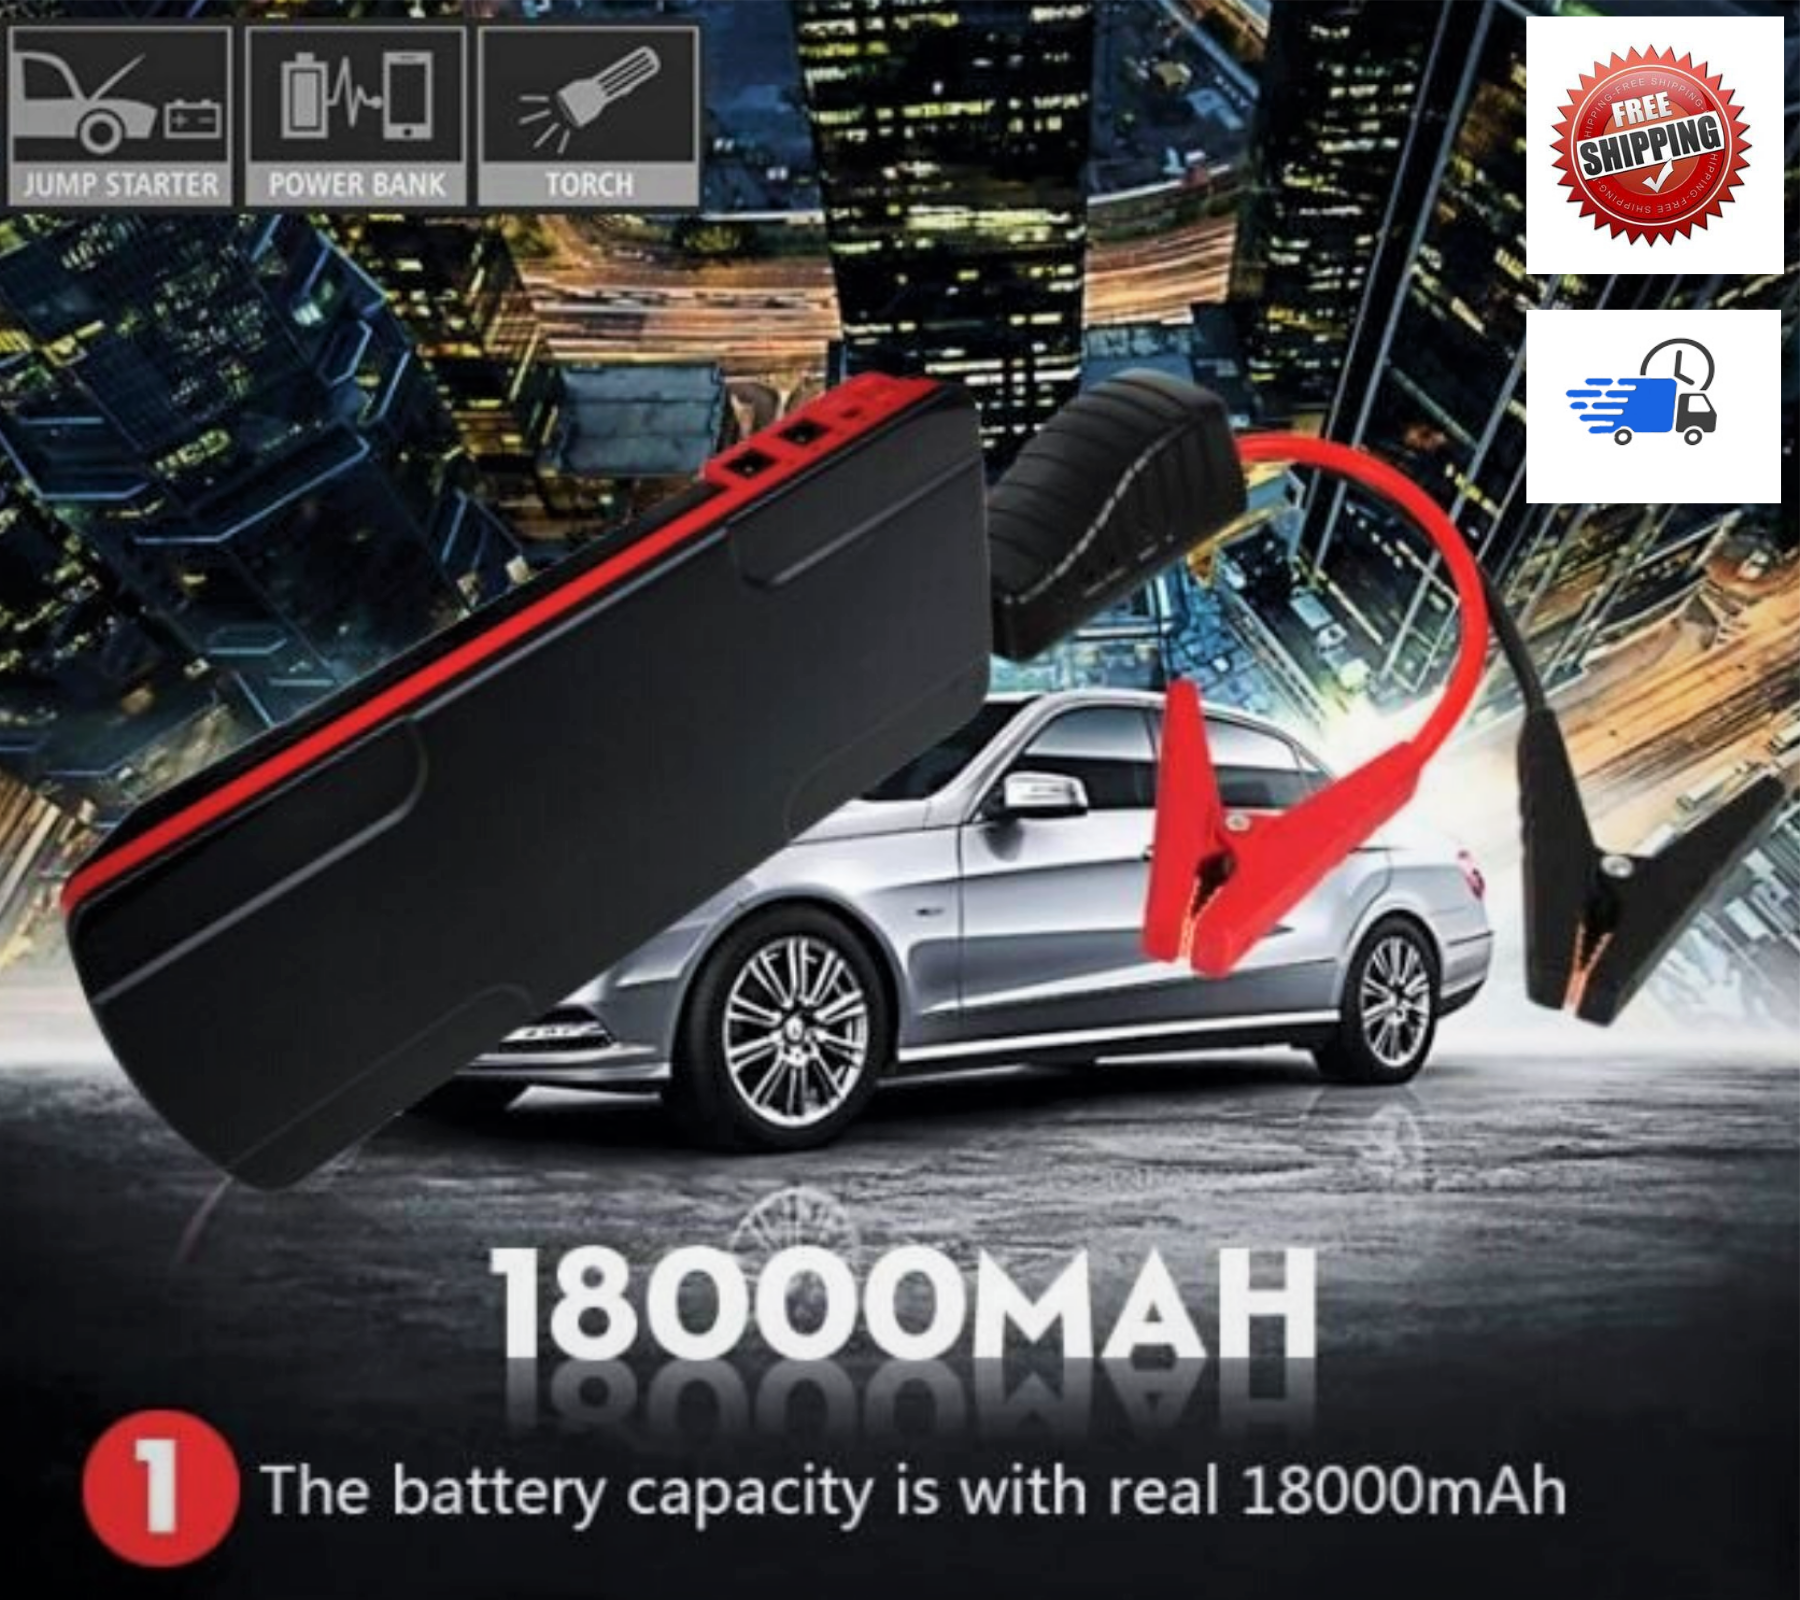 Striker 18000MAH JUMP Starter Power BANK Car Battery Booster Portable